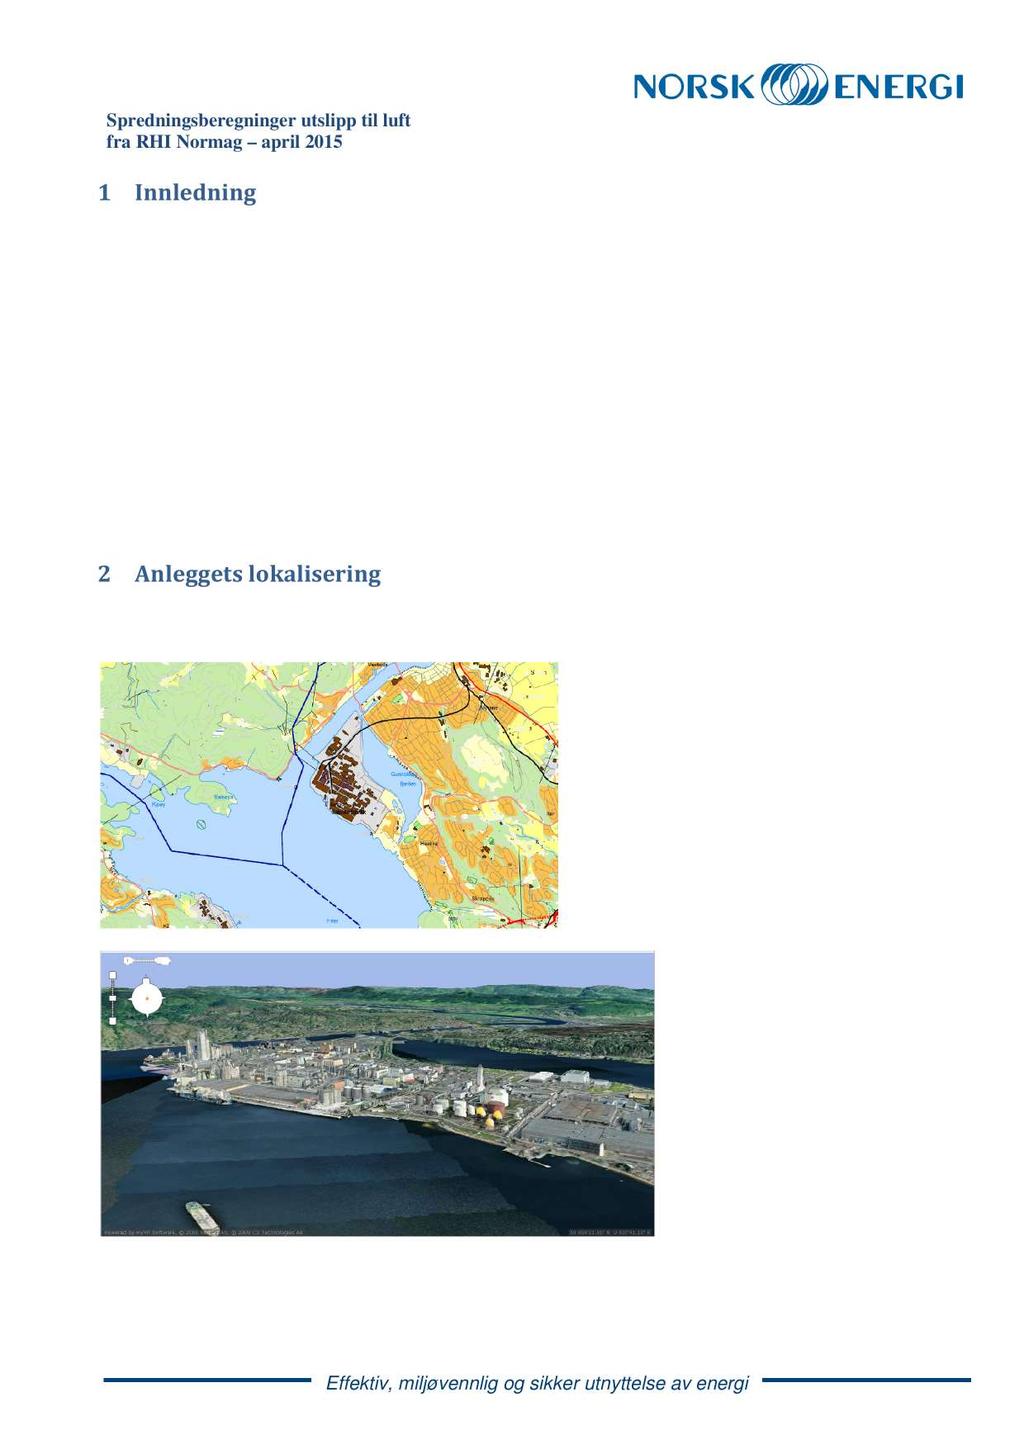 1 Innledning NorskEnergihartidligere(2012)utført spredningsberegningeri forbindelsemedutslippssøknadfor RHI Normag.